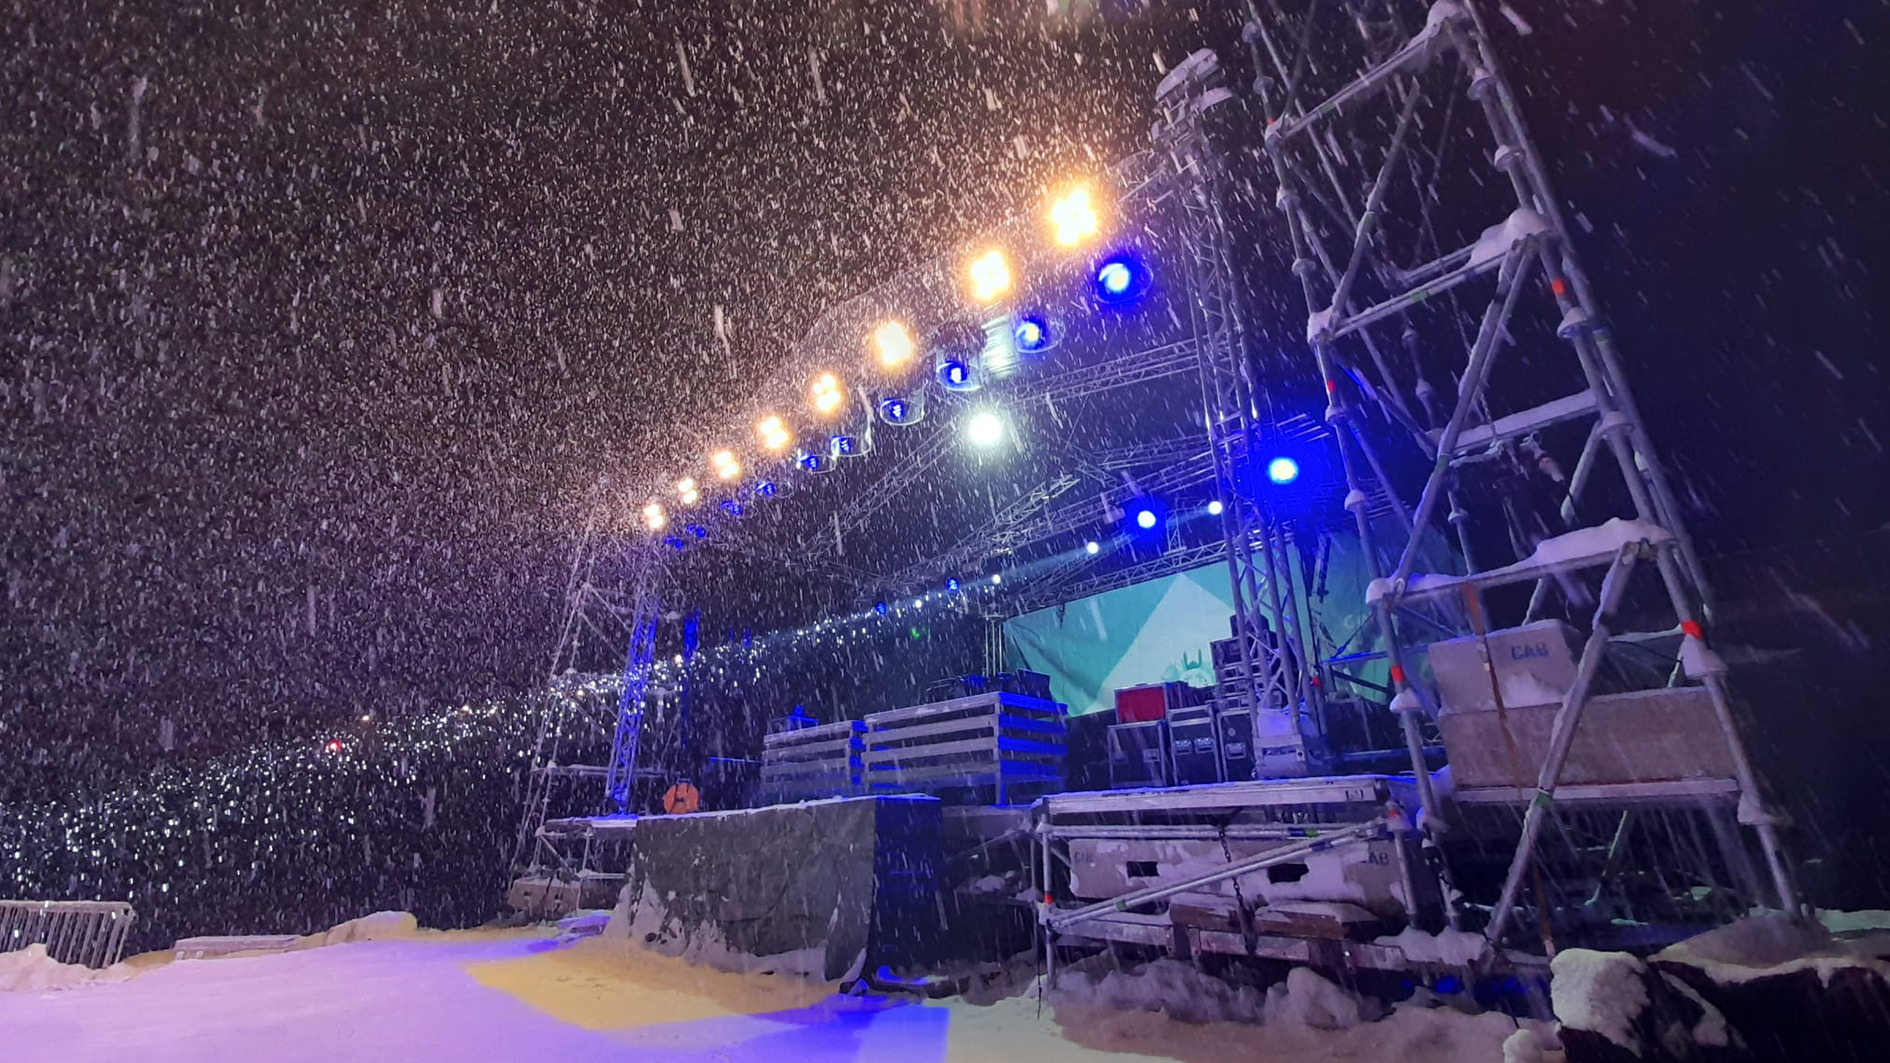 Bühne im Schnee